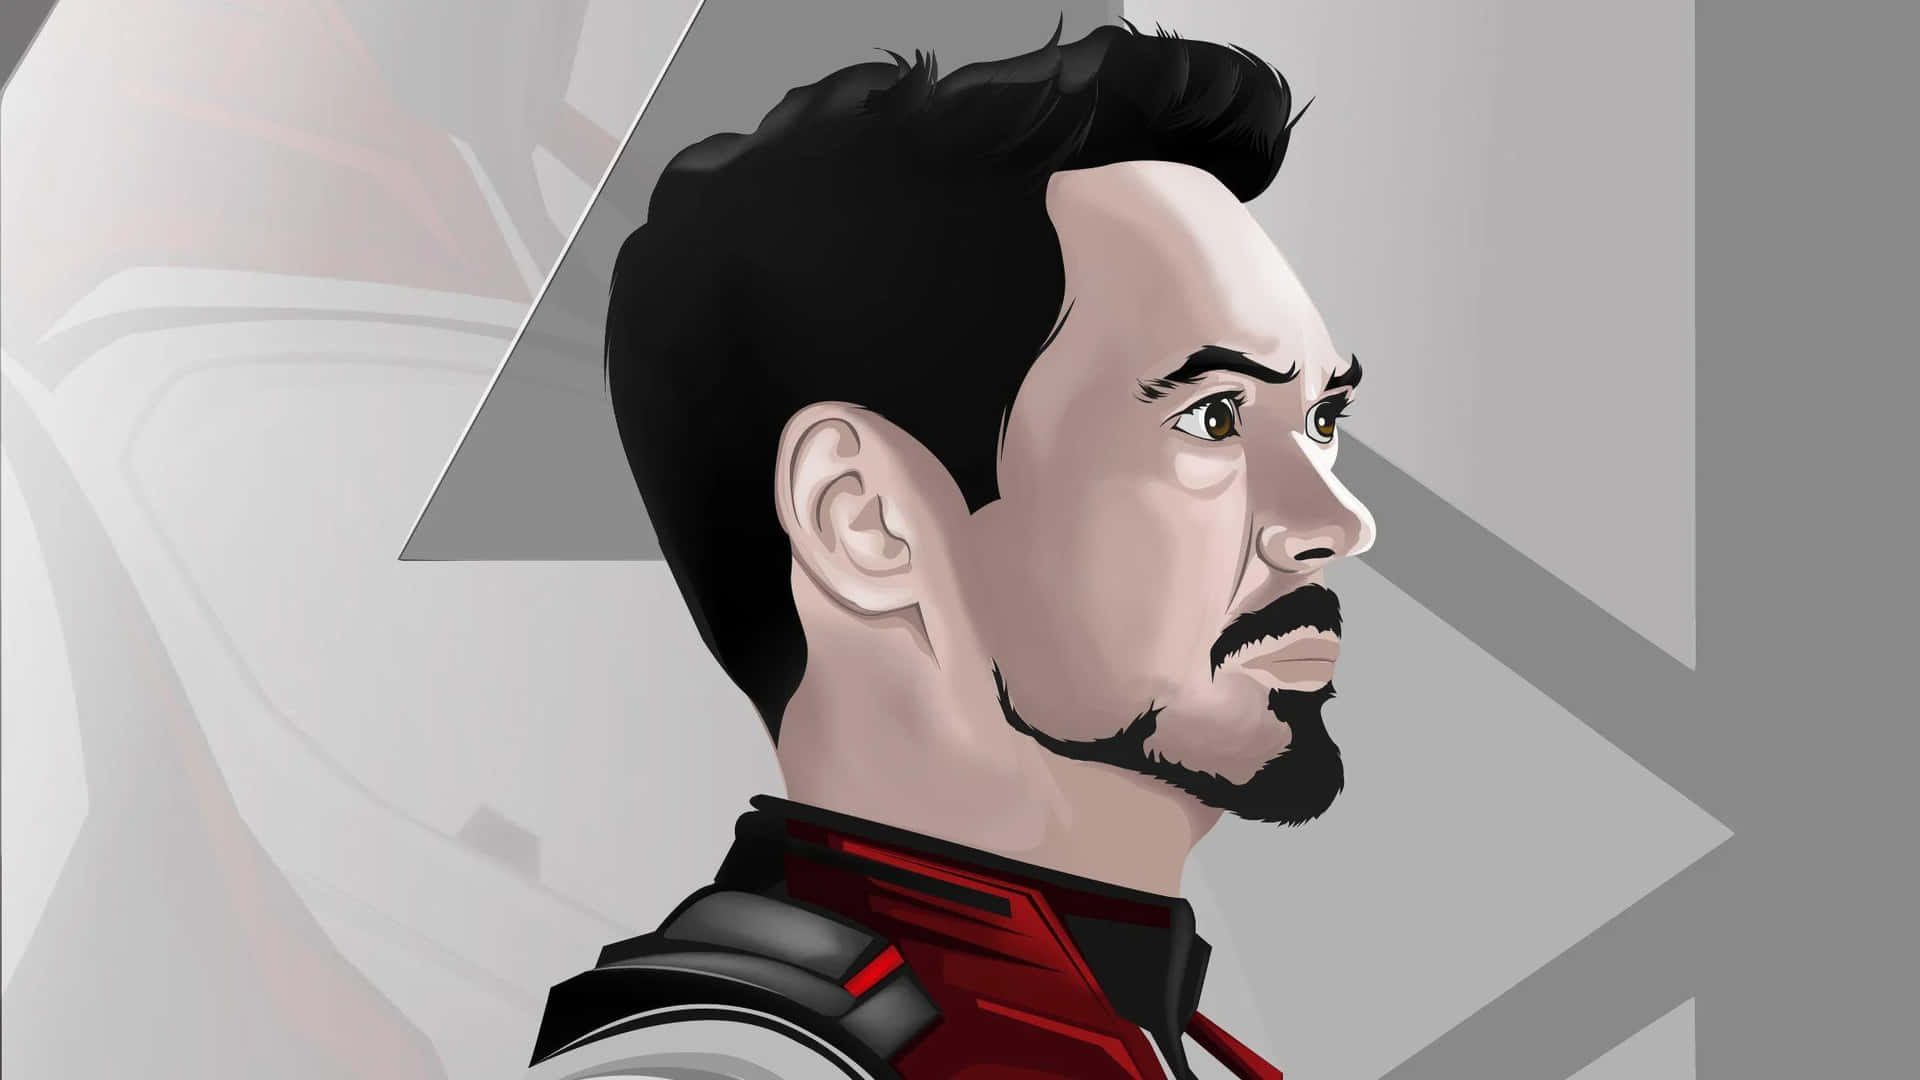 Tony Stark Illustration Wallpaper